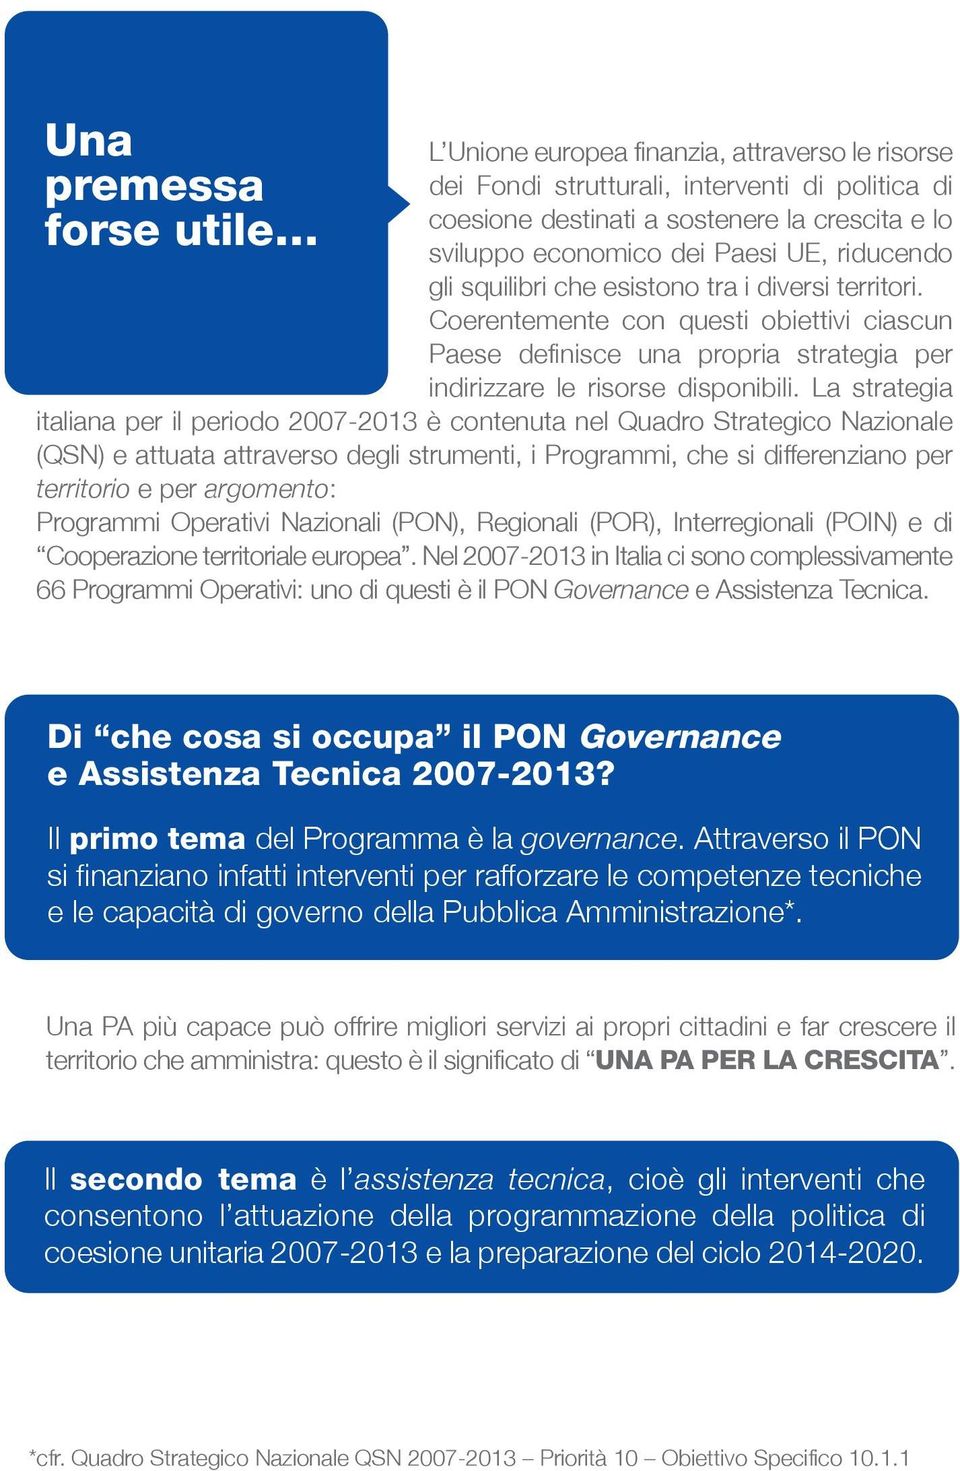 La strategia italiana per il periodo 2007-2013 è contenuta nel Quadro Strategico Nazionale (QSN) e attuata attraverso degli strumenti, i Programmi, che si differenziano per territorio e per